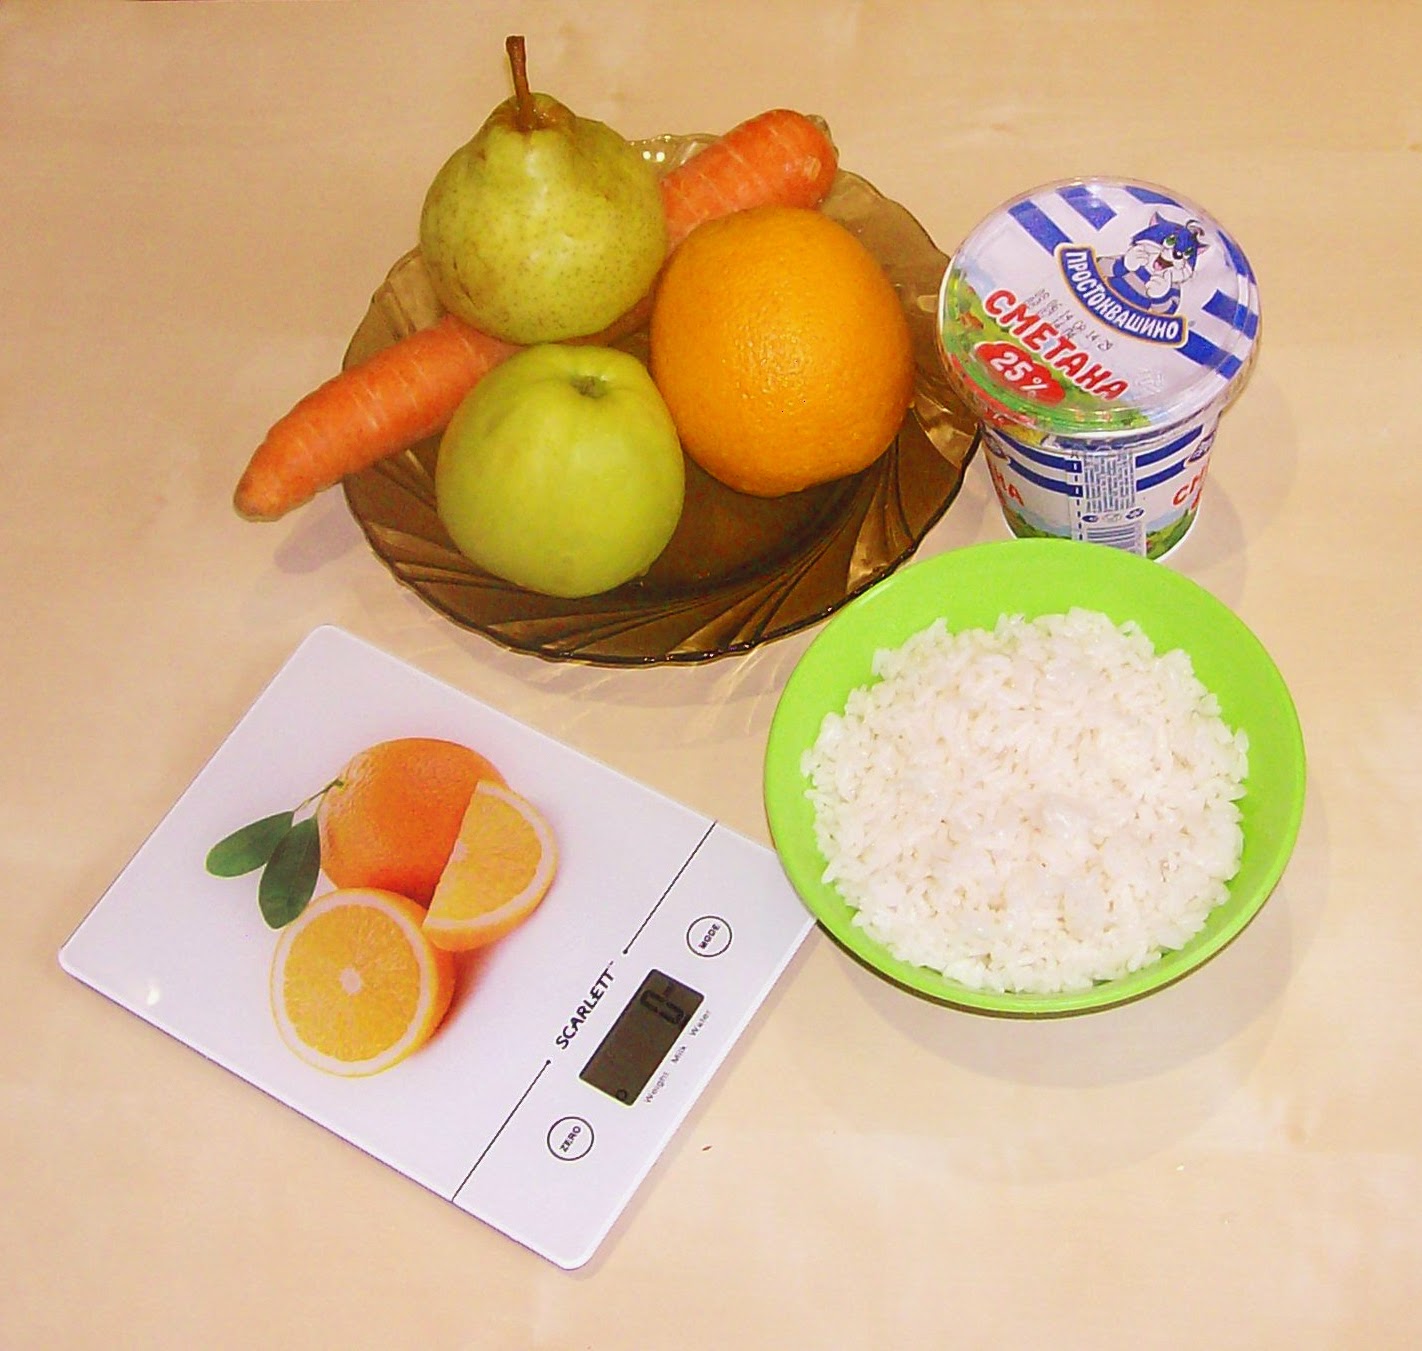 продукты для фруктово - овощного с рисом салата на детский день рождения